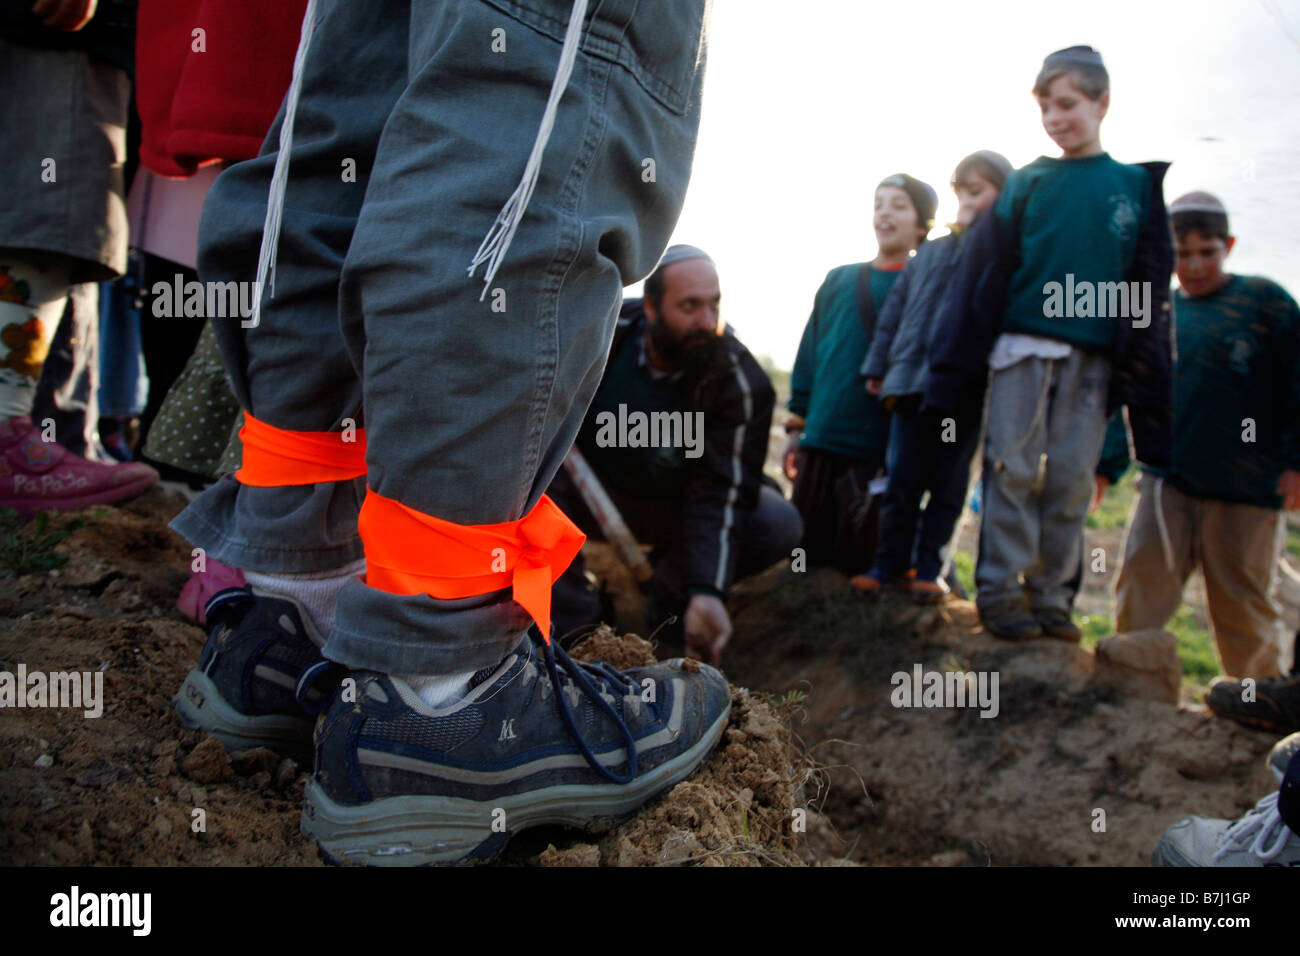 Nastri di colore arancione, simbolo dell'anti-movimento di disimpegno, legato intorno alle caviglie di un ragazzo israeliano. Foto Stock